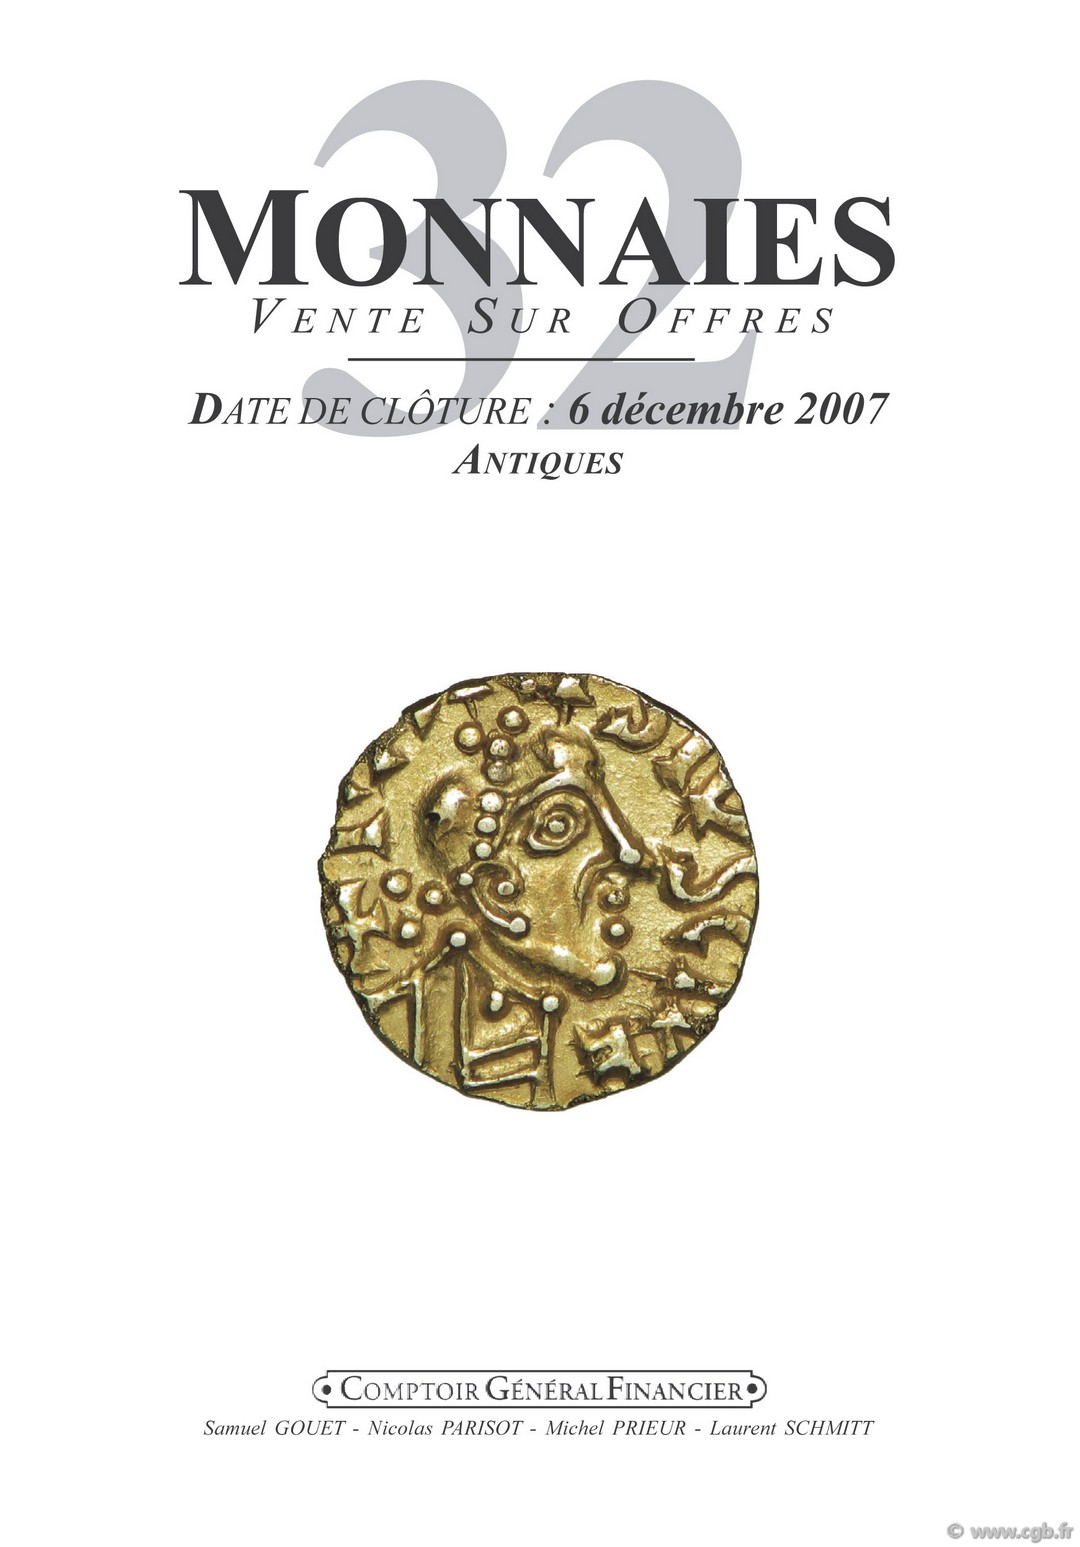 Monnaies 32 - Antiques GOUET S., PARISOT N., PRIEUR M., SCHMITT L.